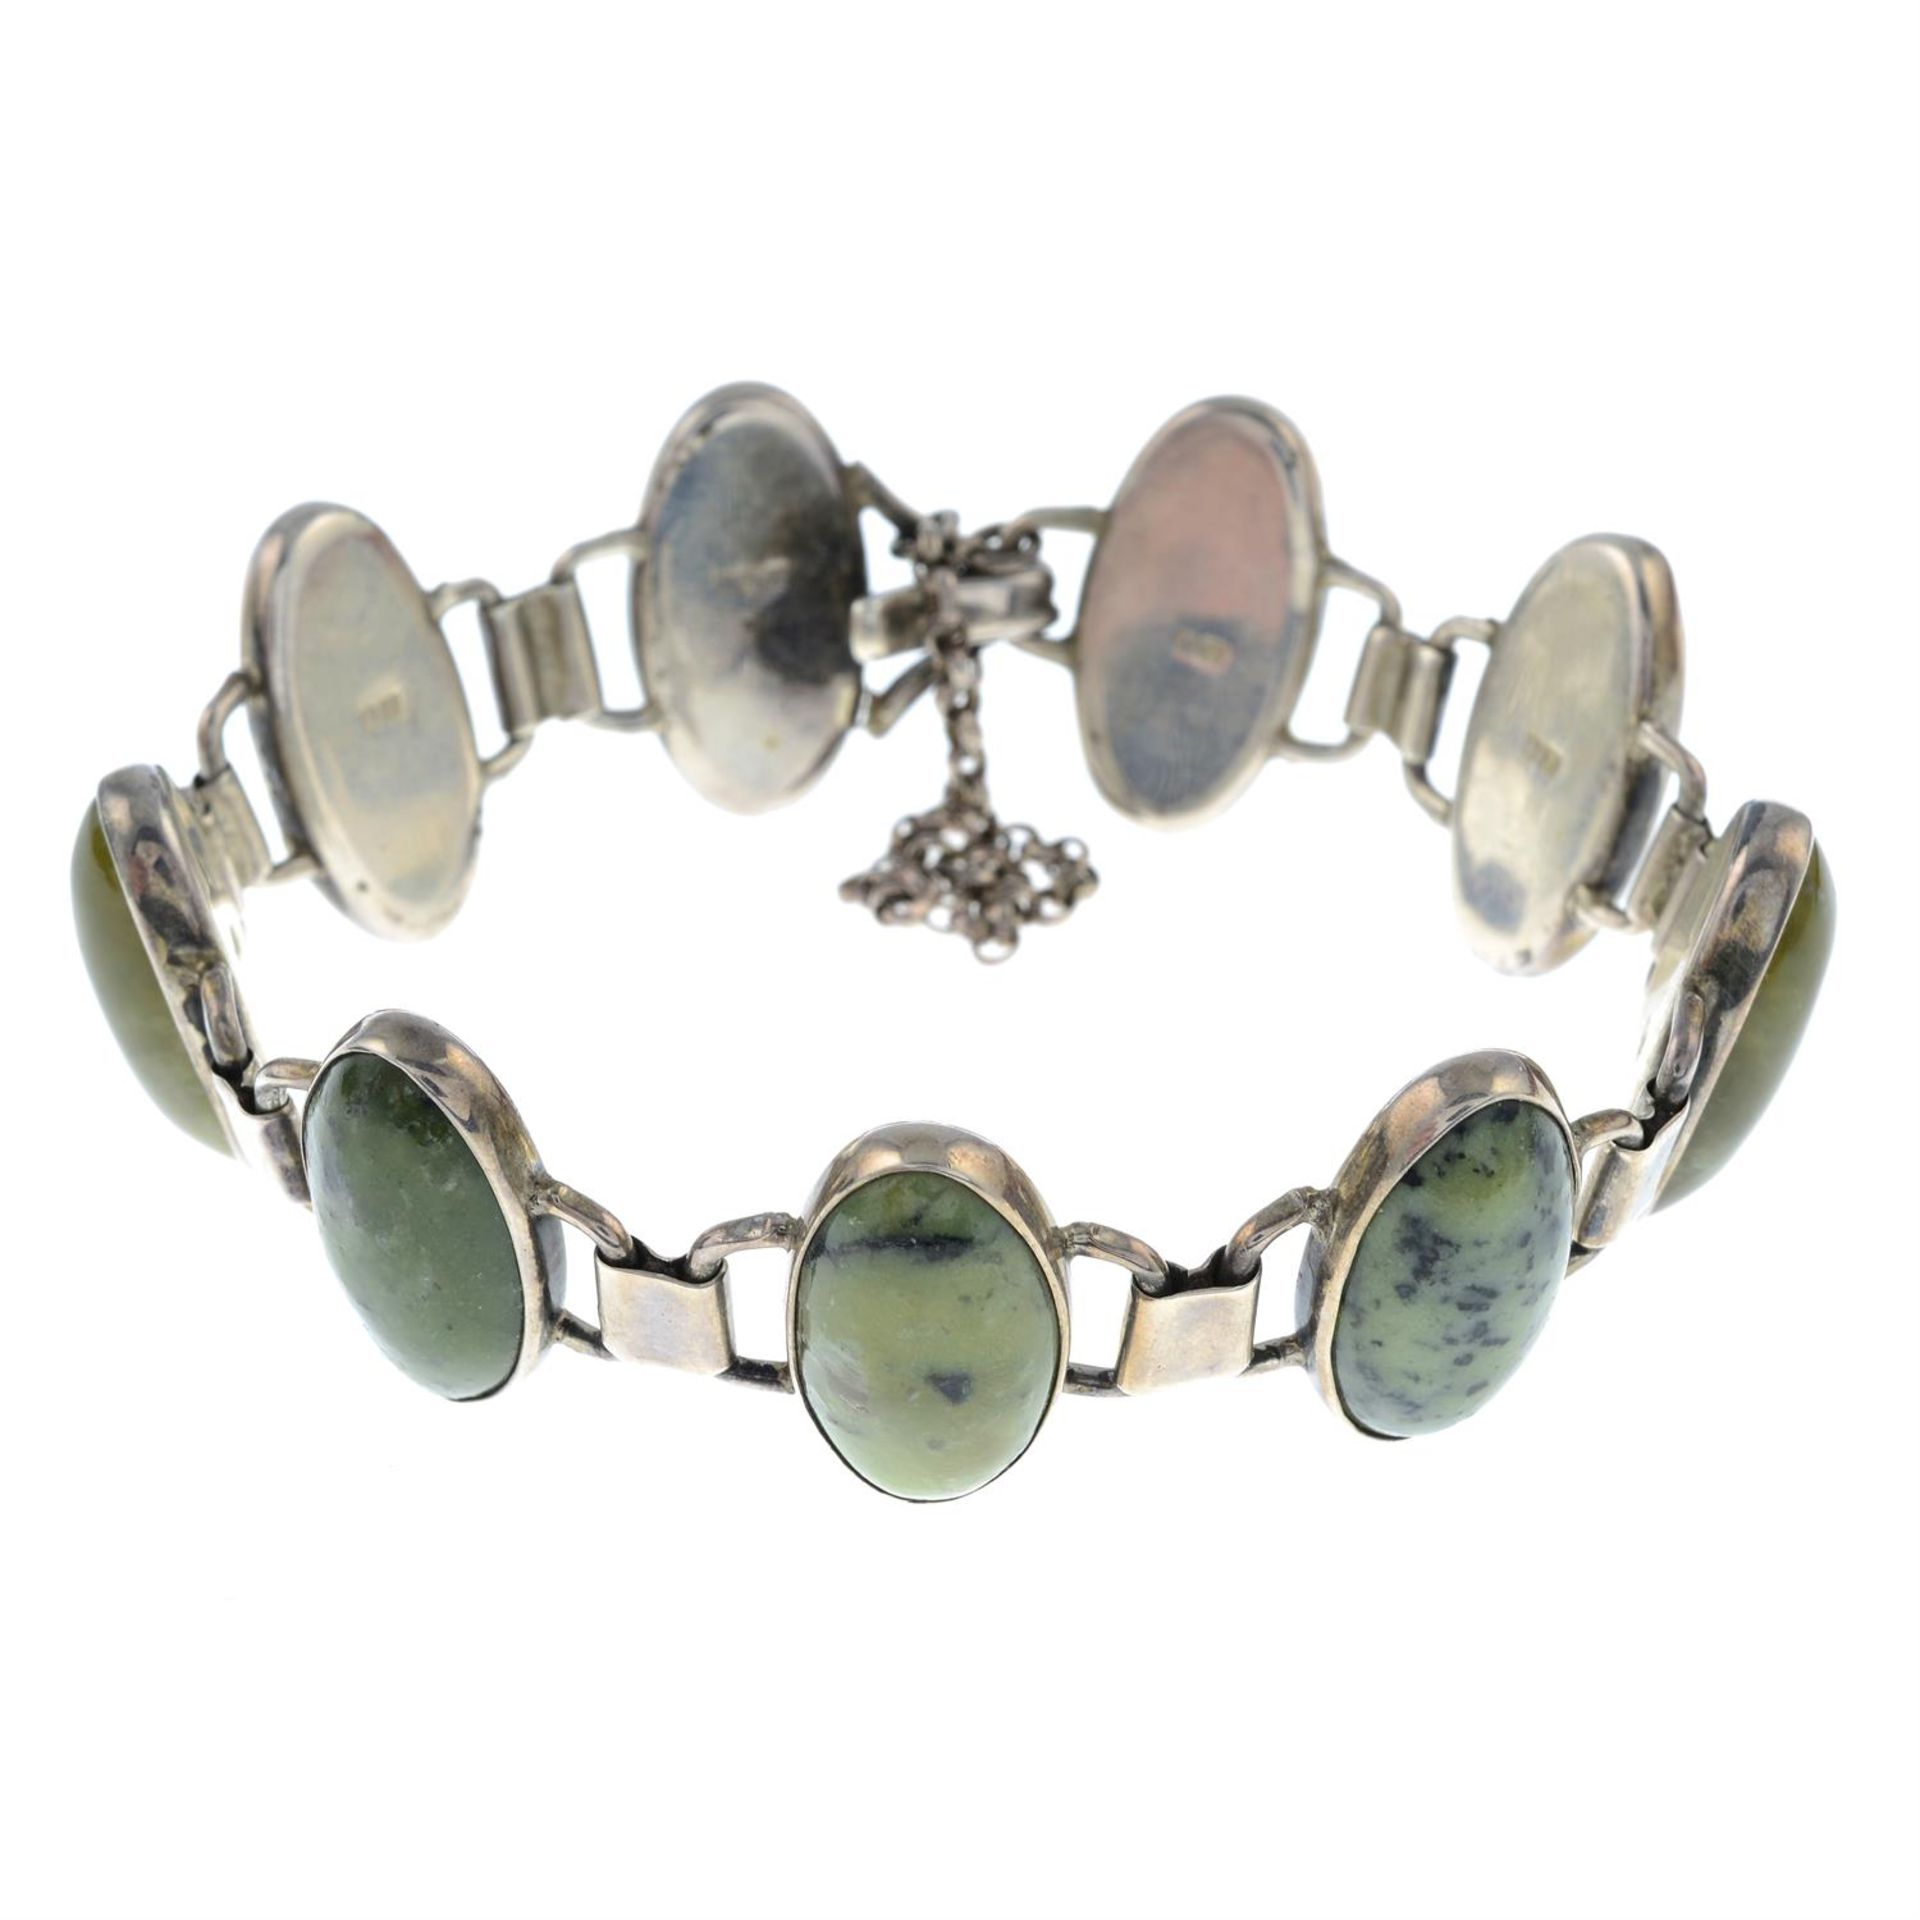 A silver nephrite bracelet.